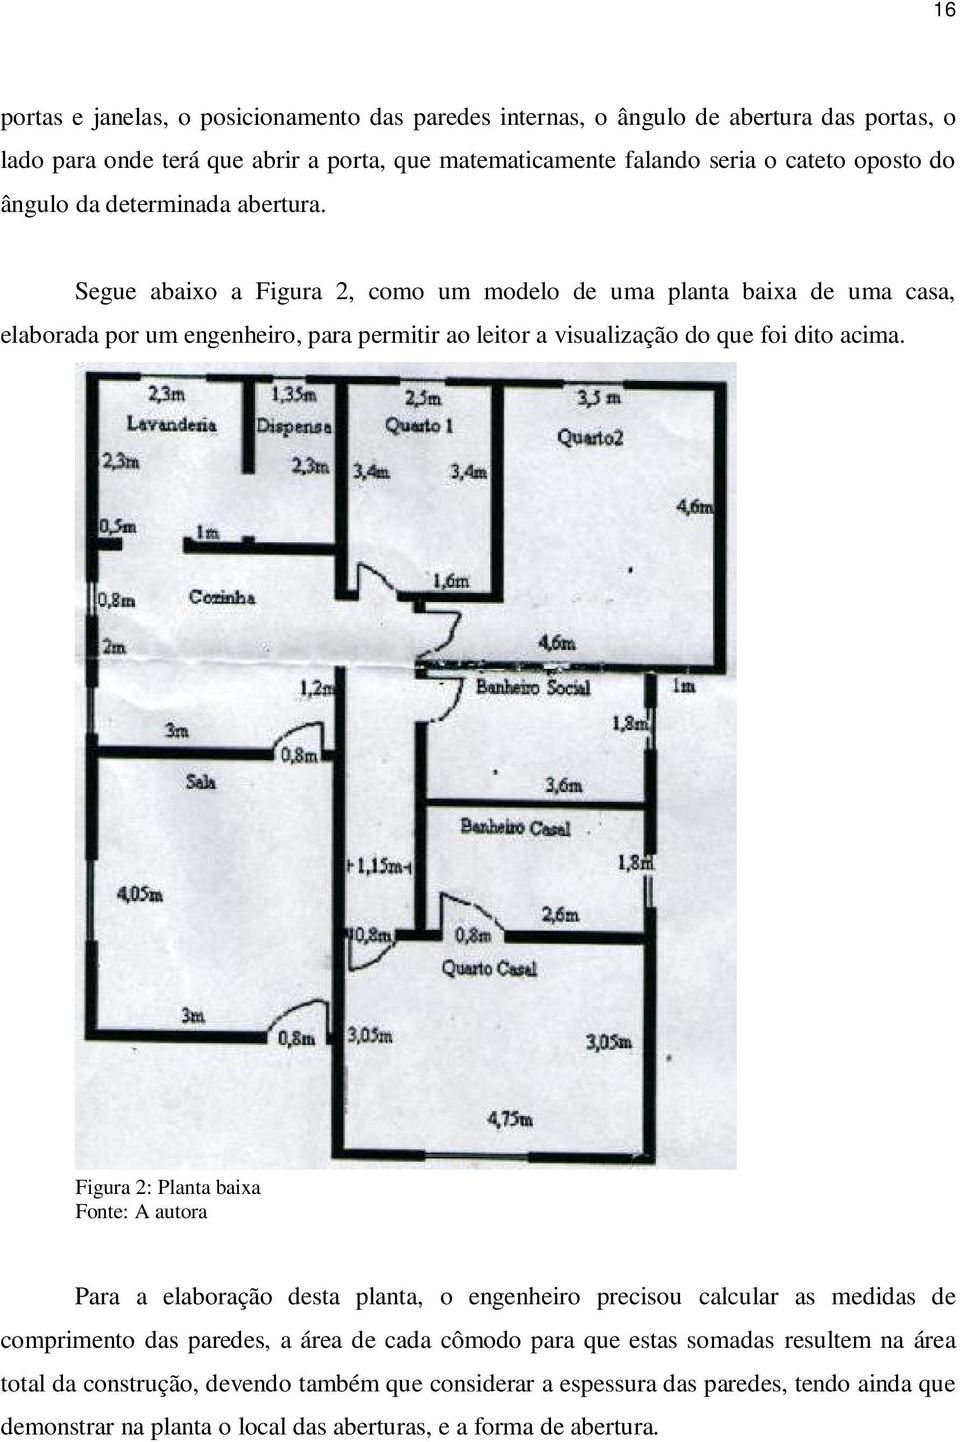 Segue abaixo a Figura 2, como um modelo de uma planta baixa de uma casa, elaborada por um engenheiro, para permitir ao leitor a visualização do que foi dito acima.